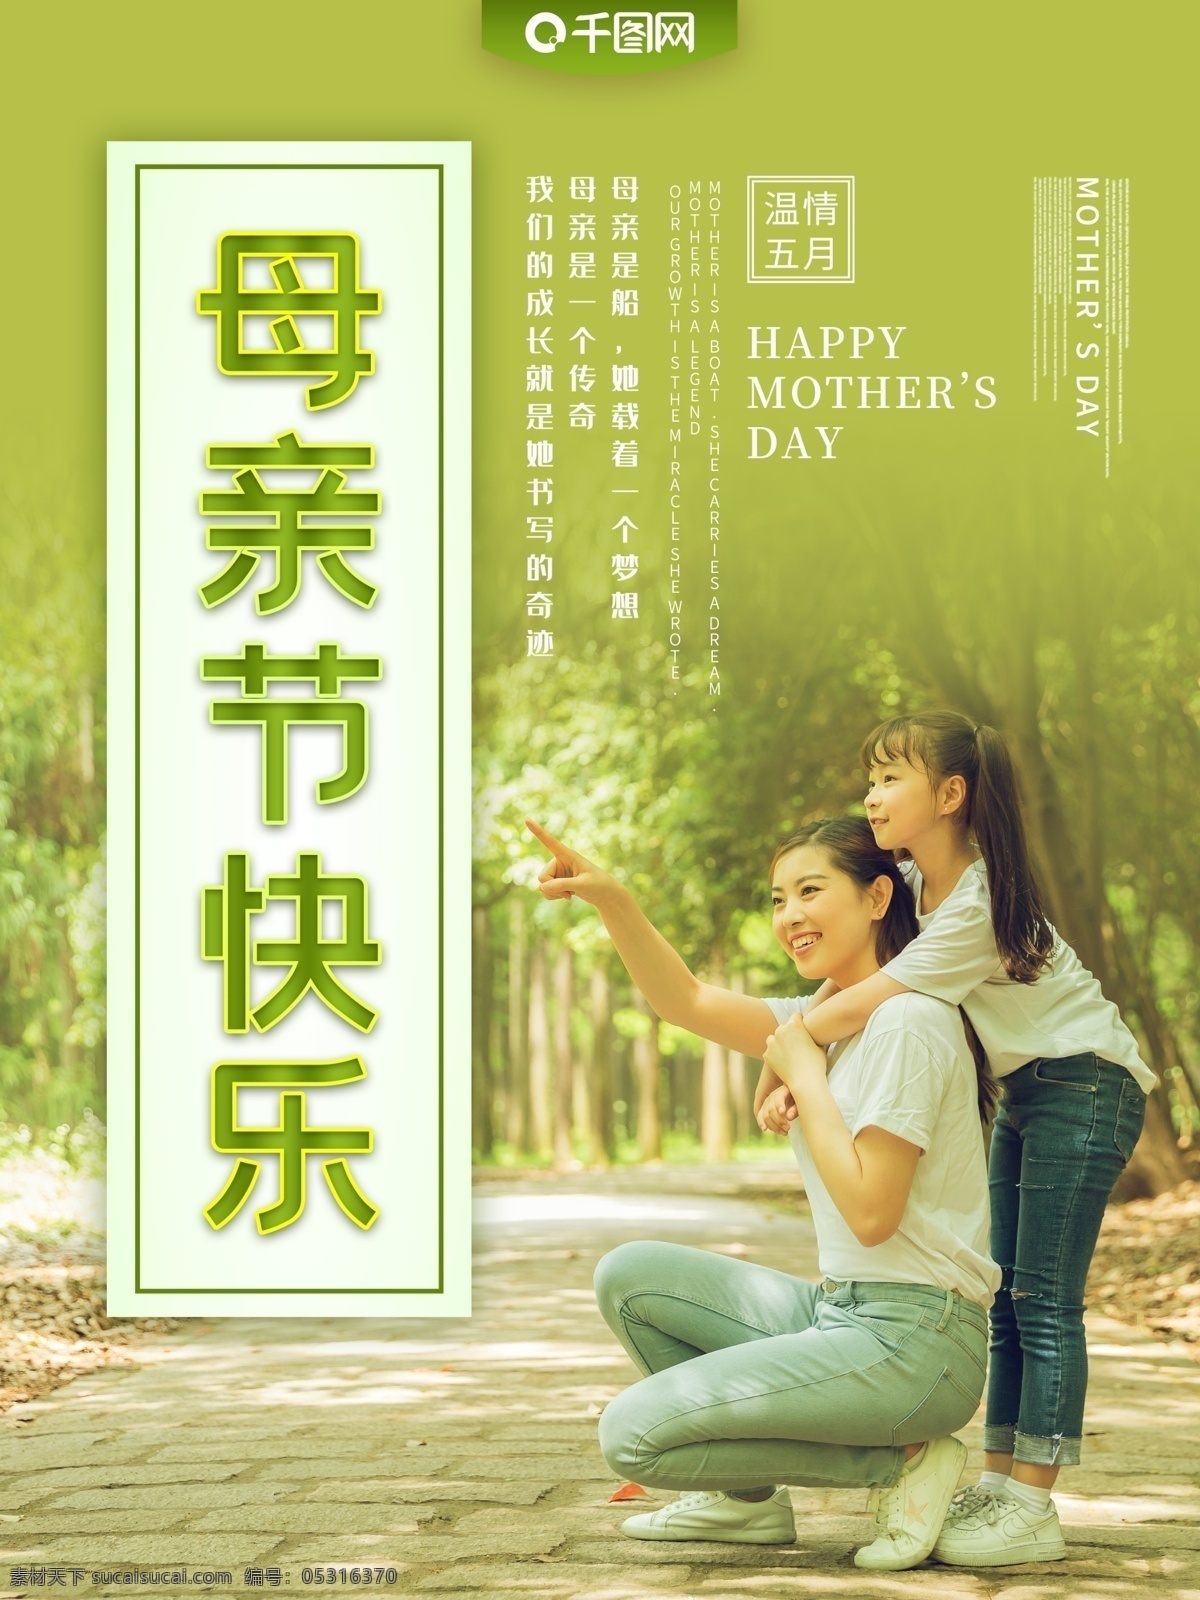 母亲节 主题 宣传海报 快乐母亲节 母亲的节日 母亲 母爱